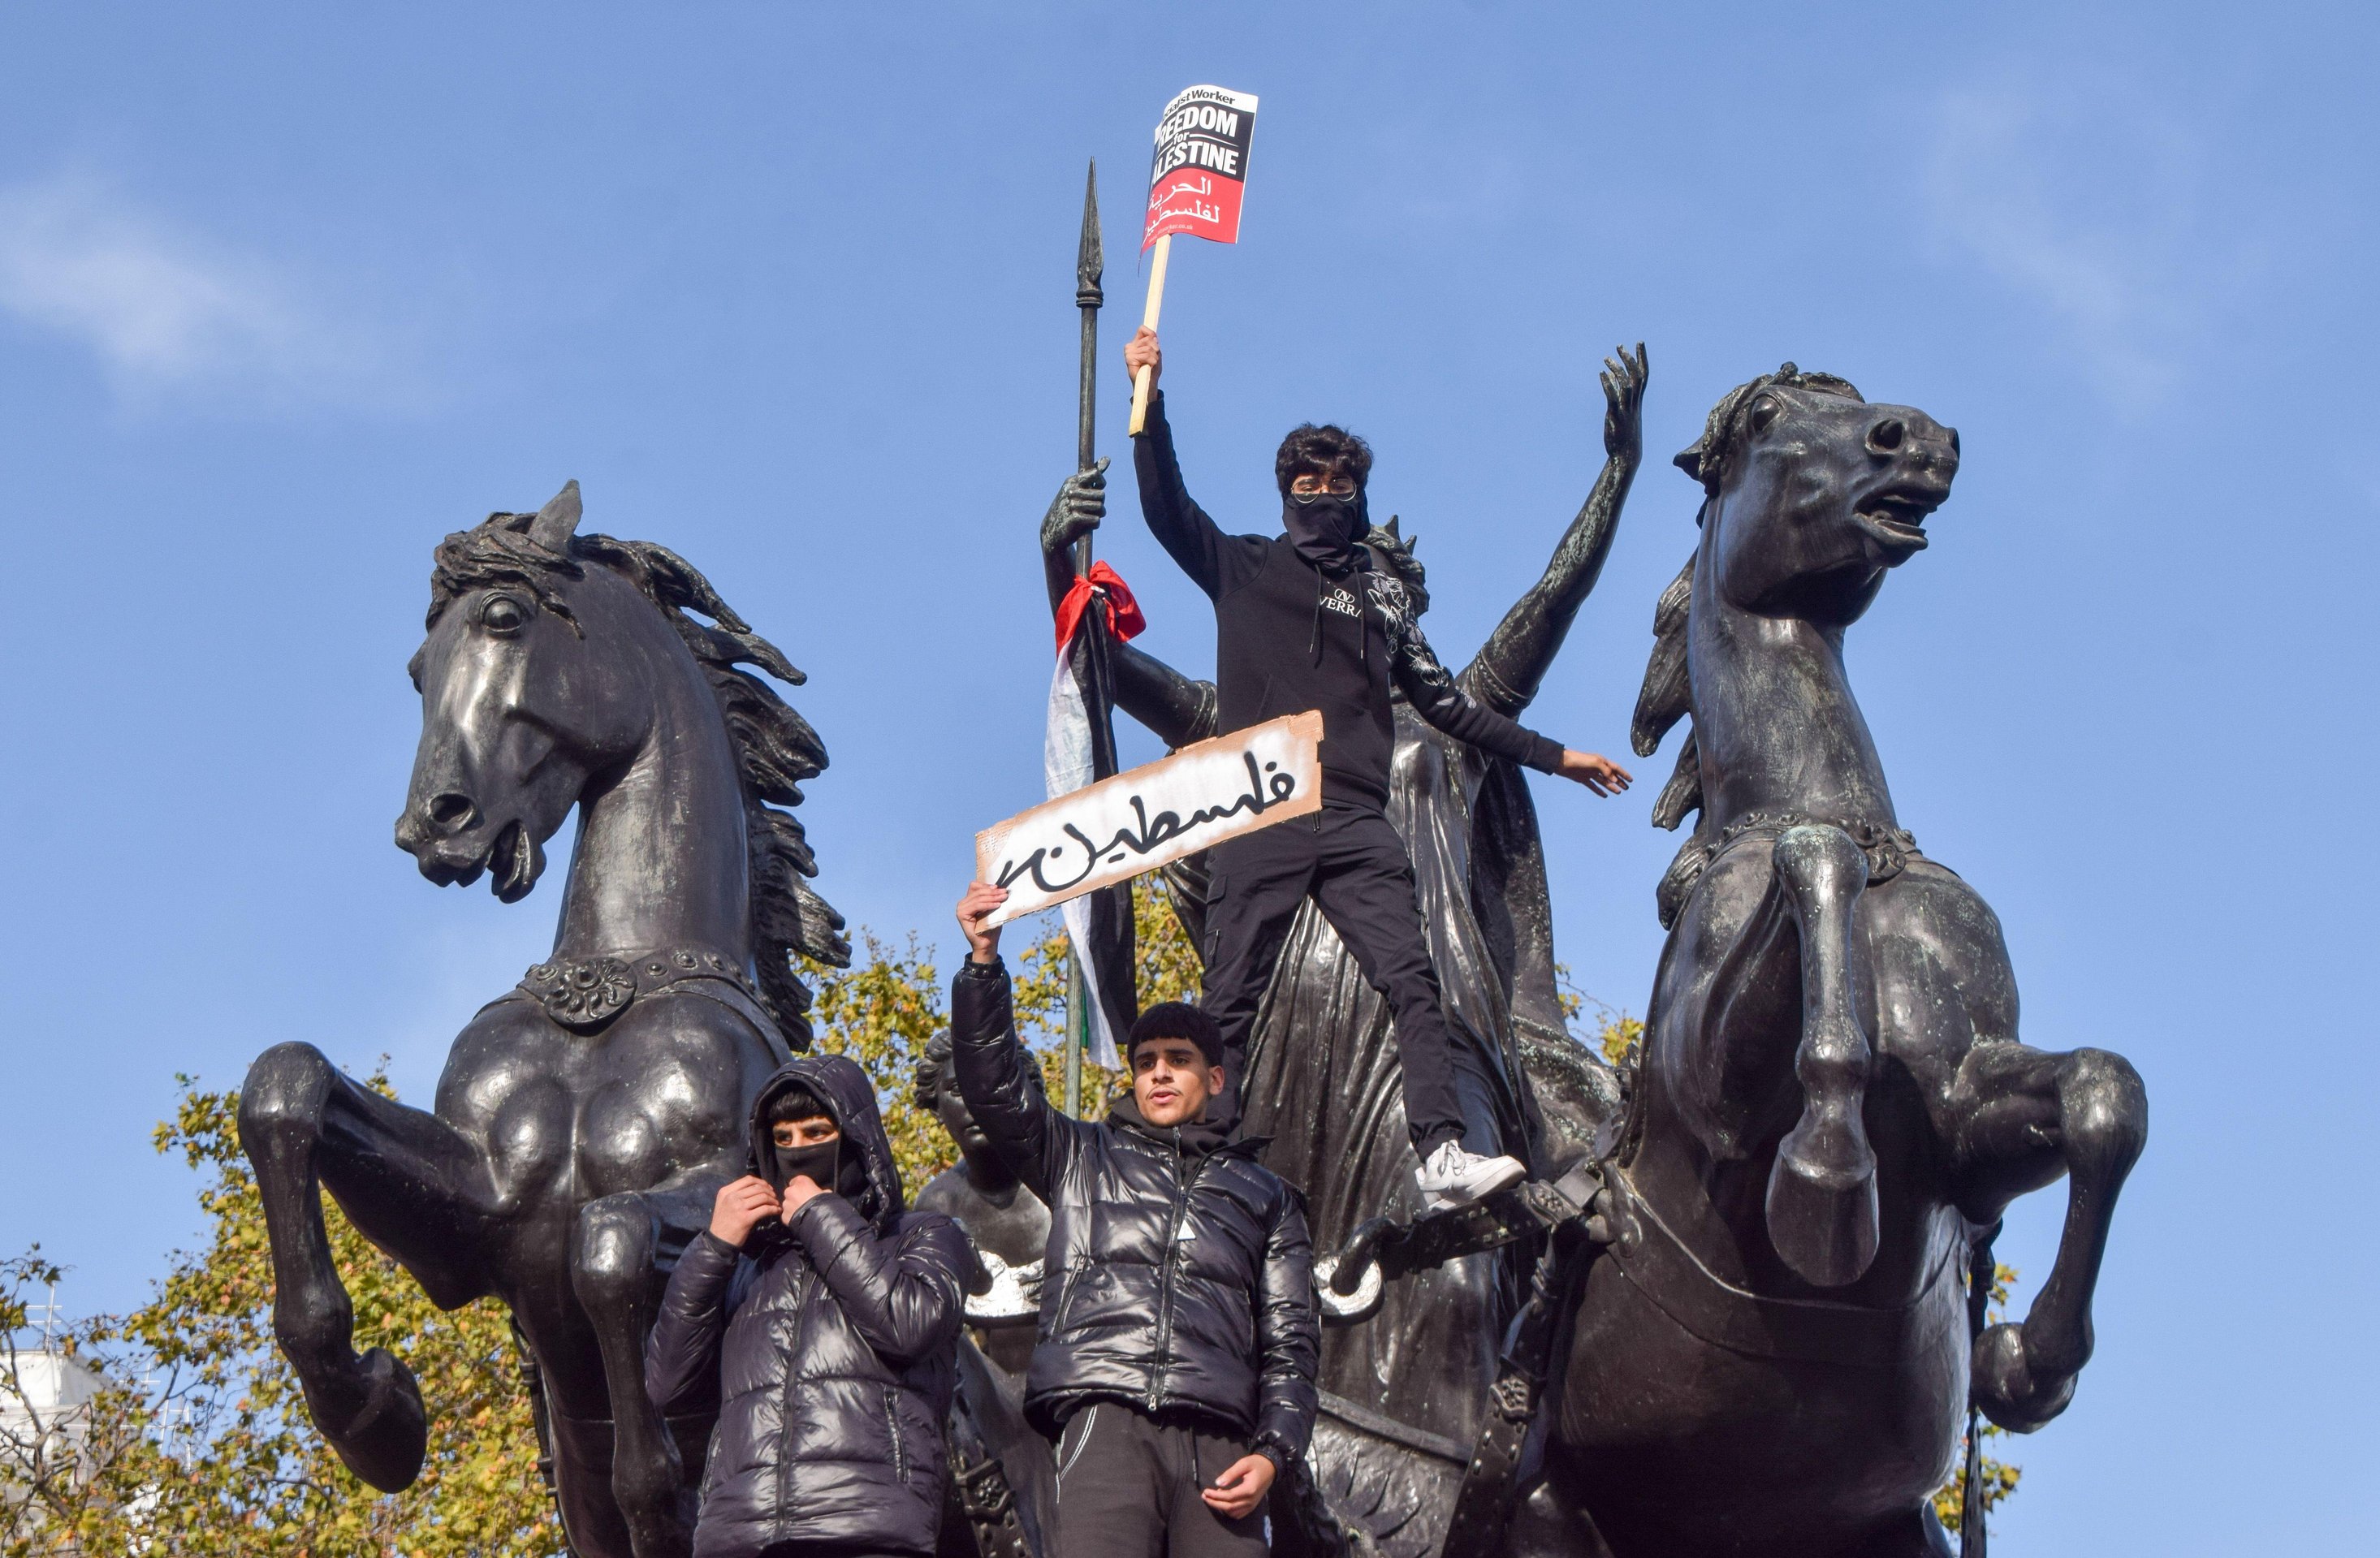 Unter den wachsamen Blicken der beobachtenden Polizei kletterten Demonstranten auf Londoner Denkmäler